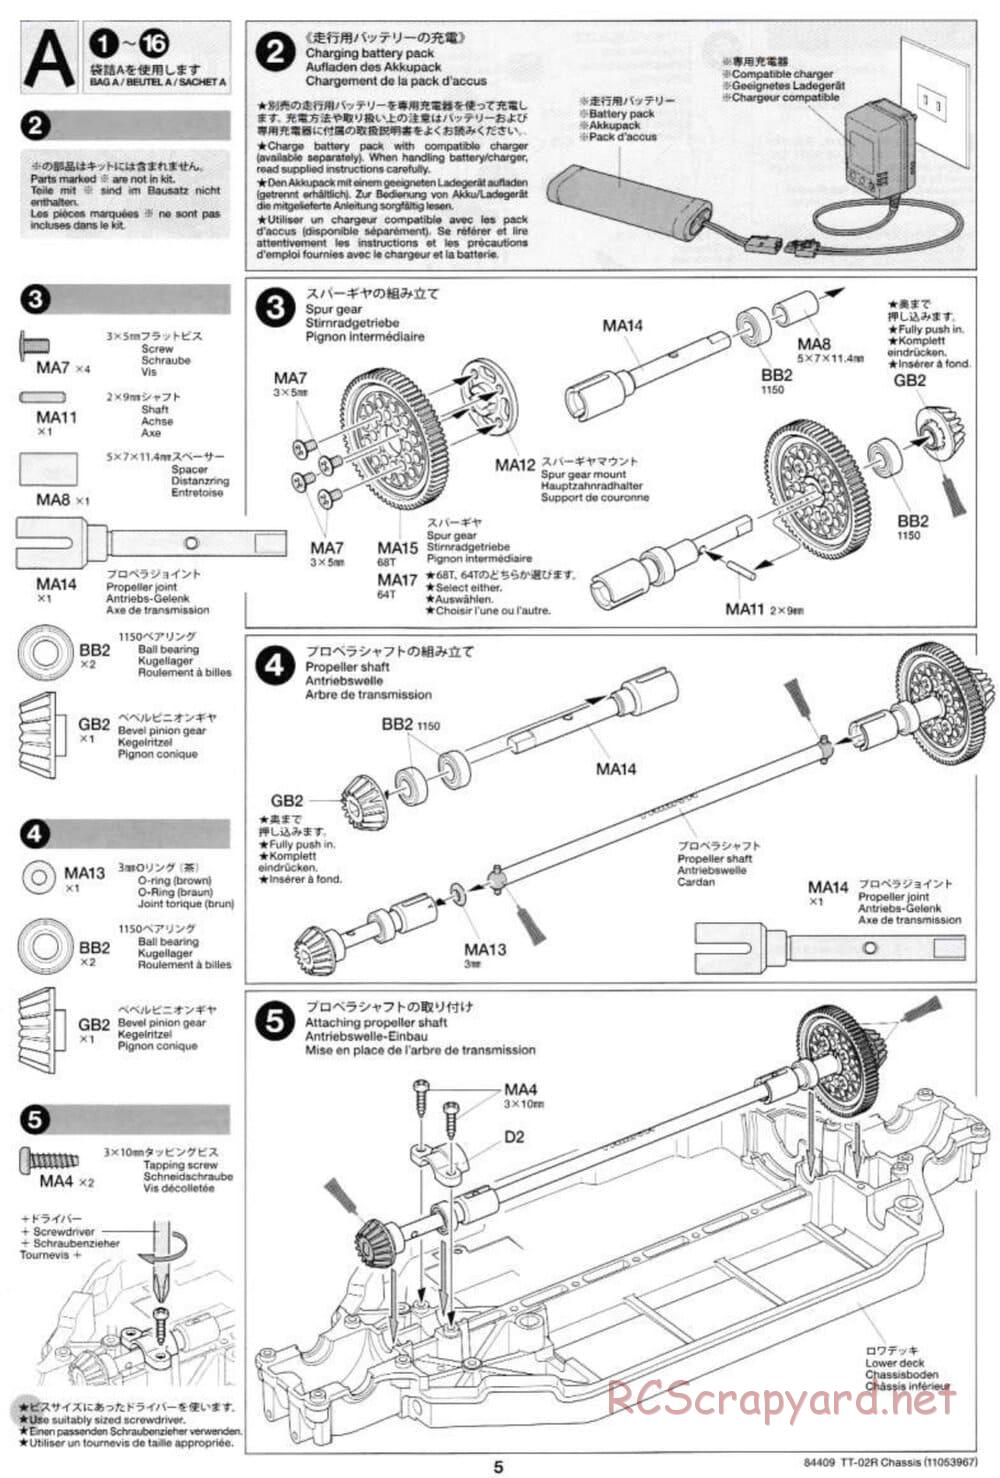 Tamiya - TT-02R Chassis - Manual - Page 5